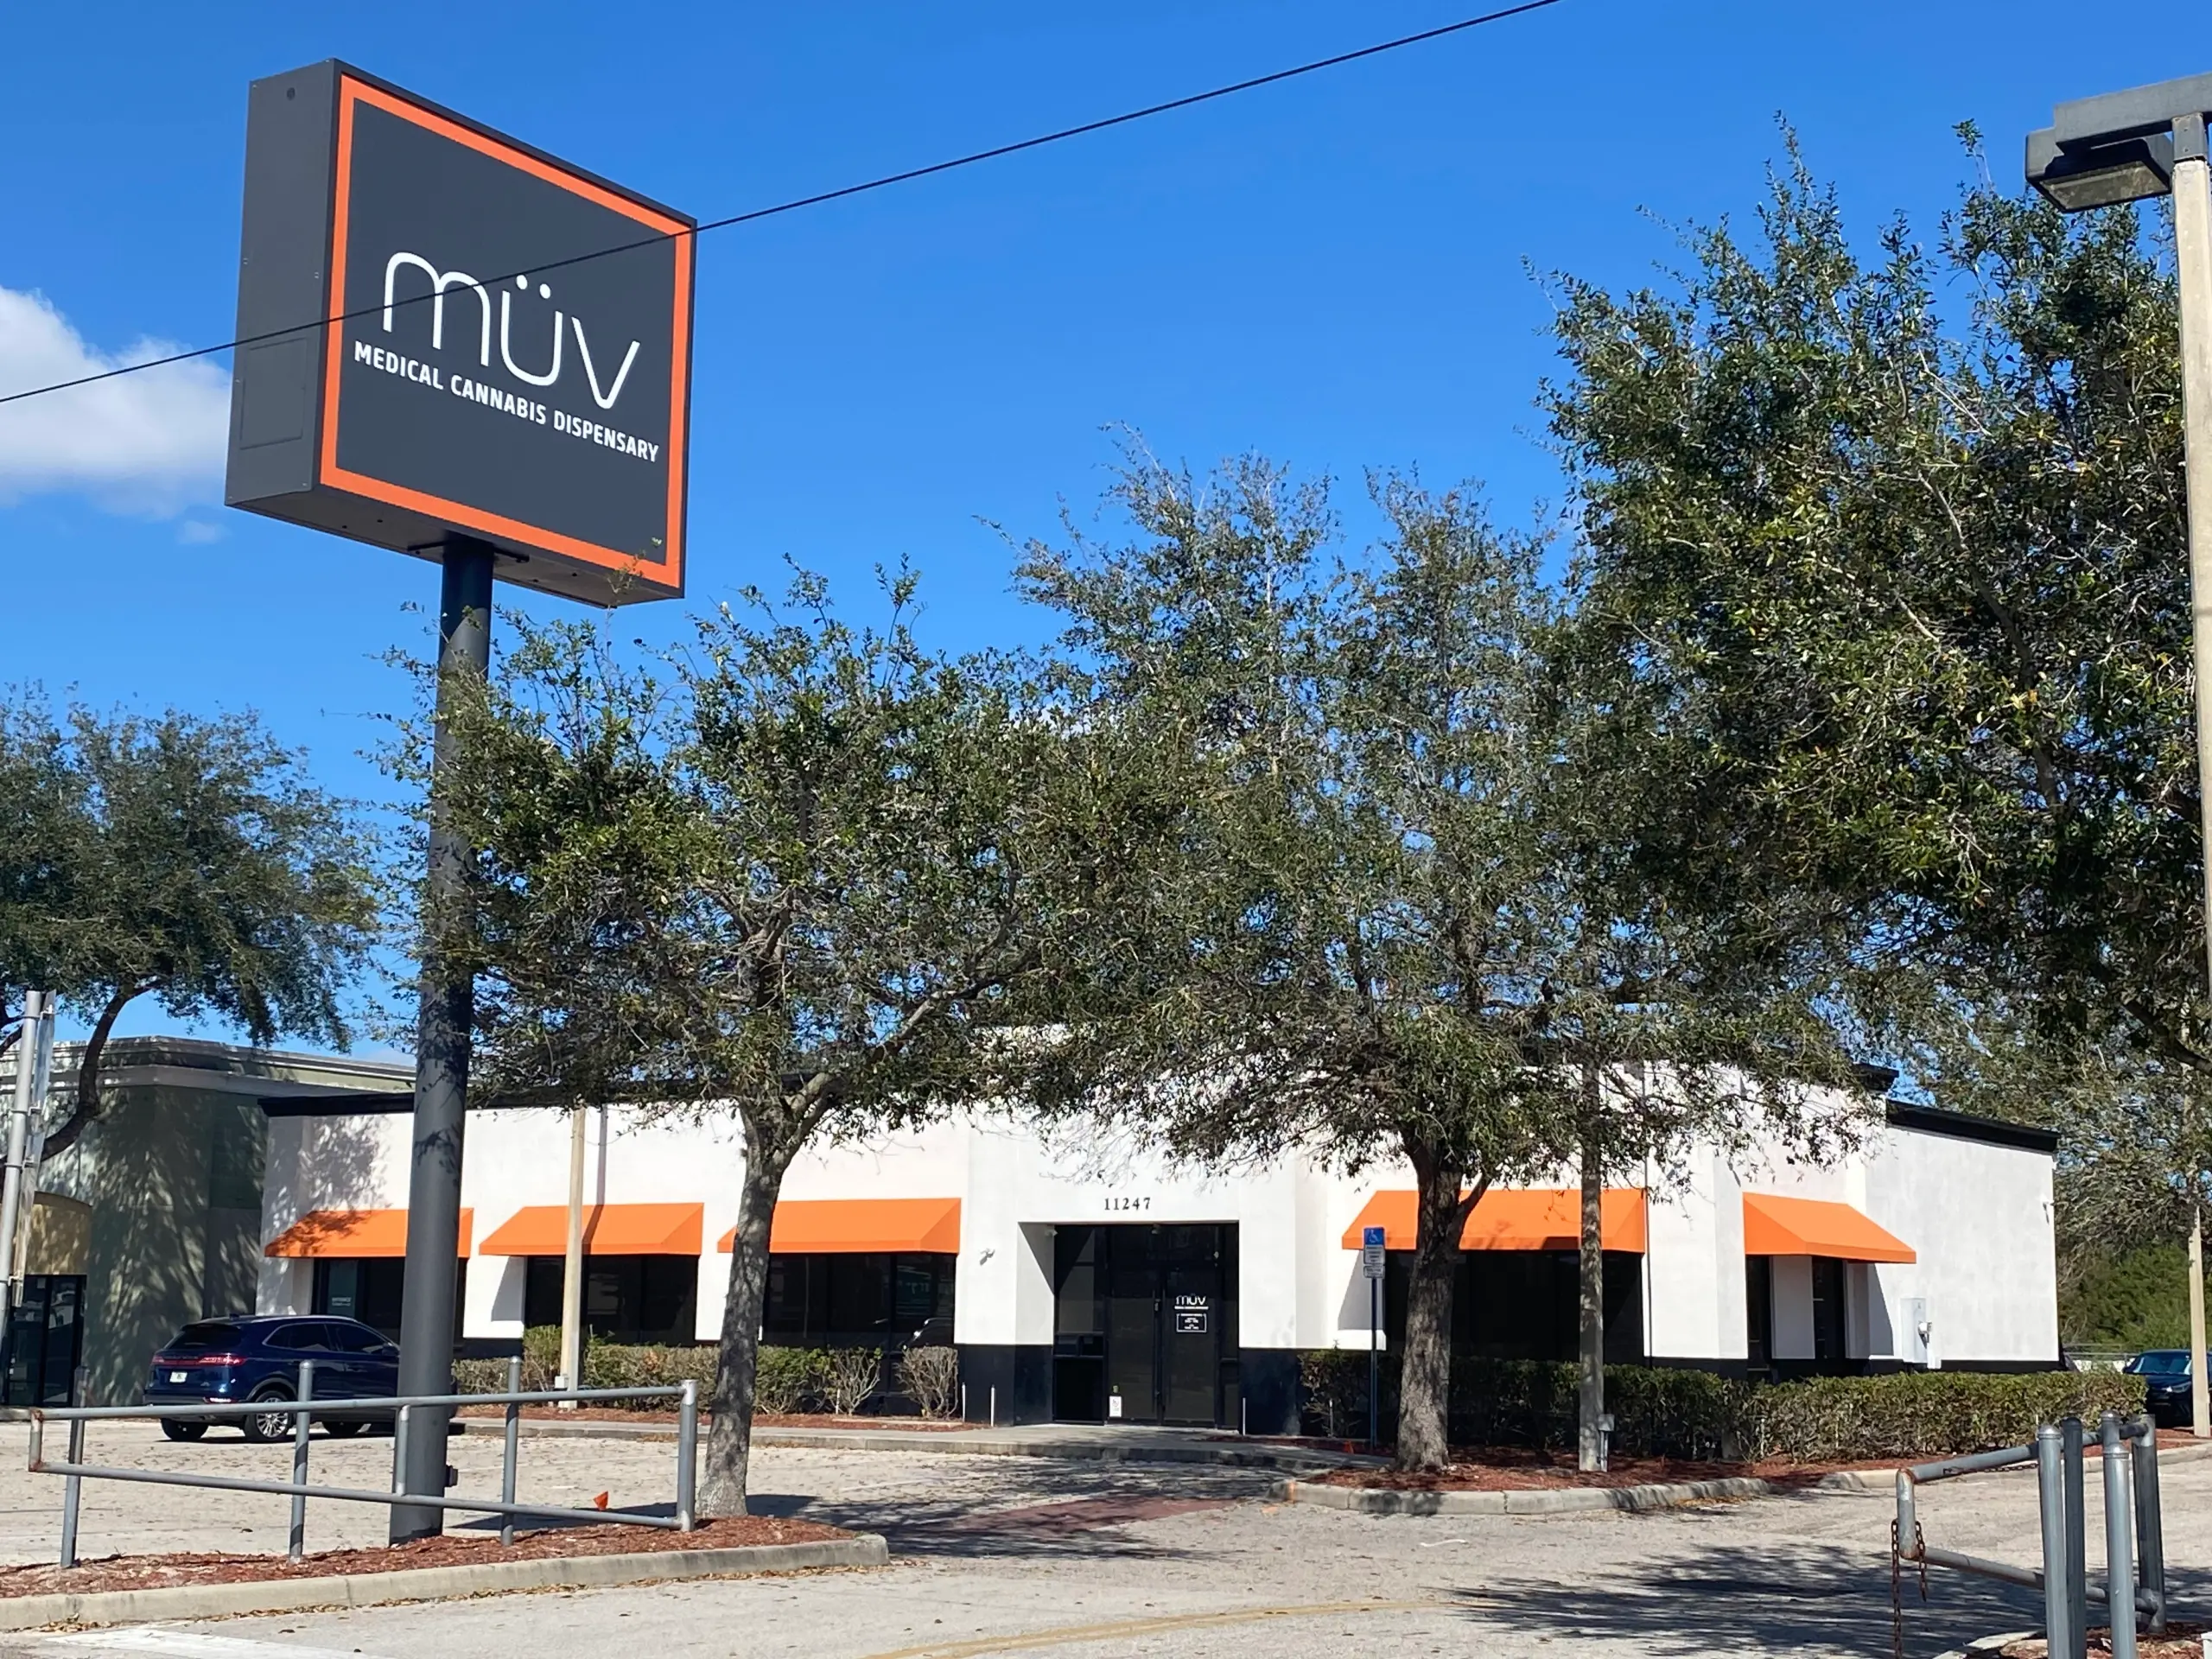 Outside MÜV Orlando - Colonial Dispensary